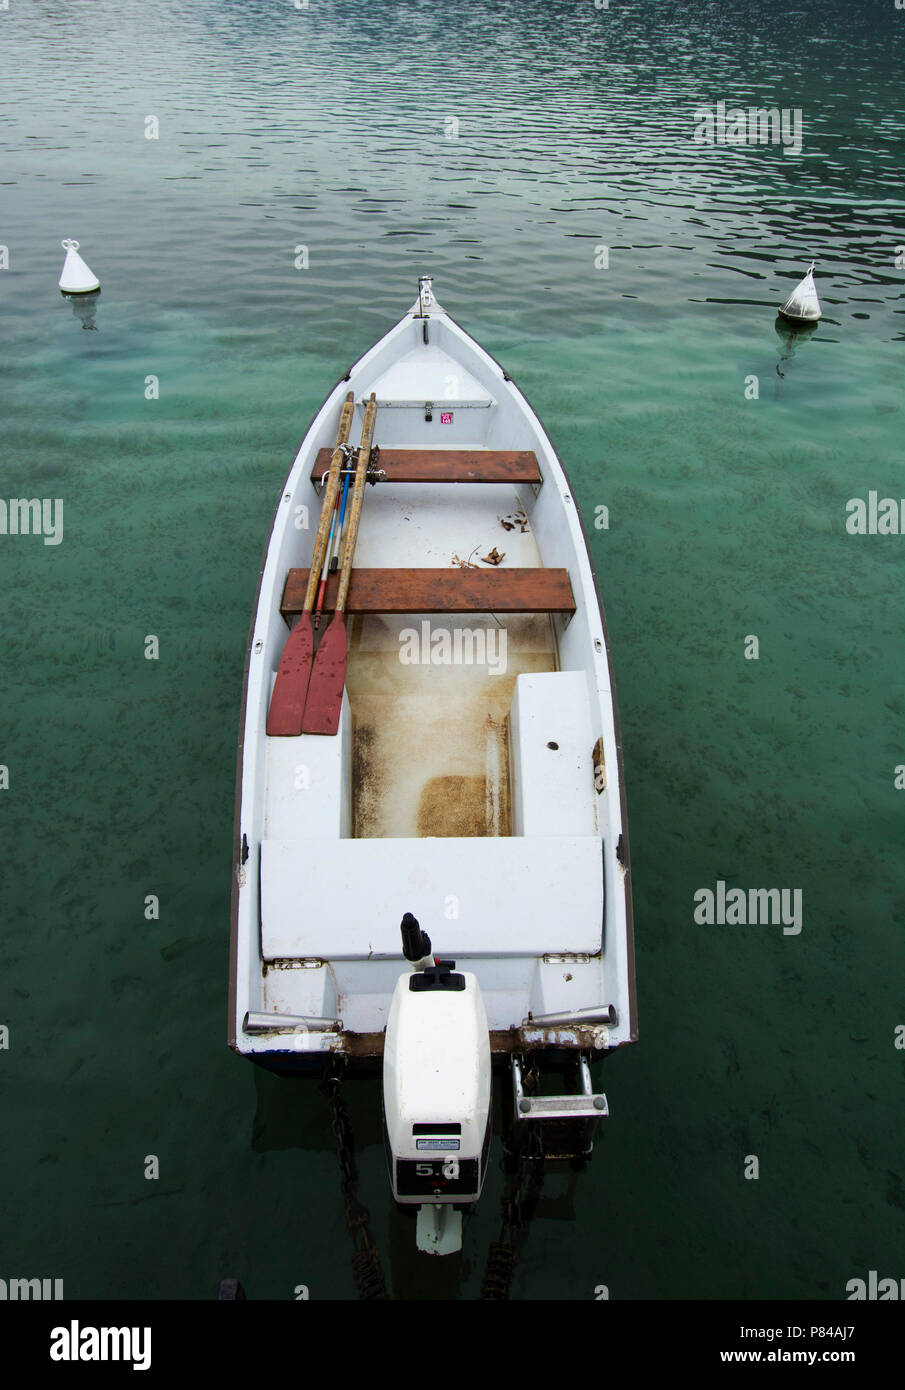 La rame dans un bateau sur le lac d'Annecy, Haute-Savoie, France Banque D'Images